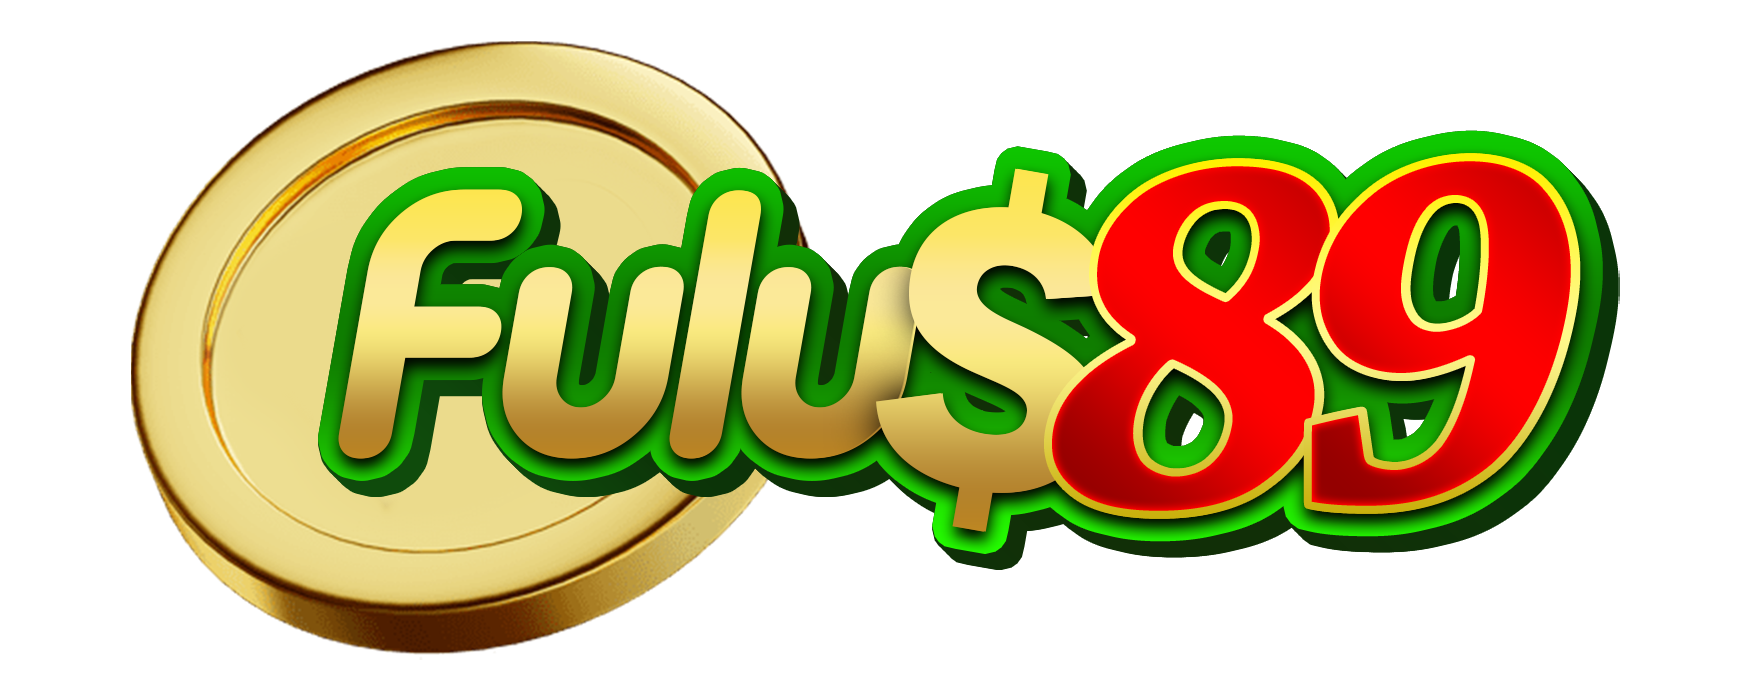 logo FULUS89 Mobile